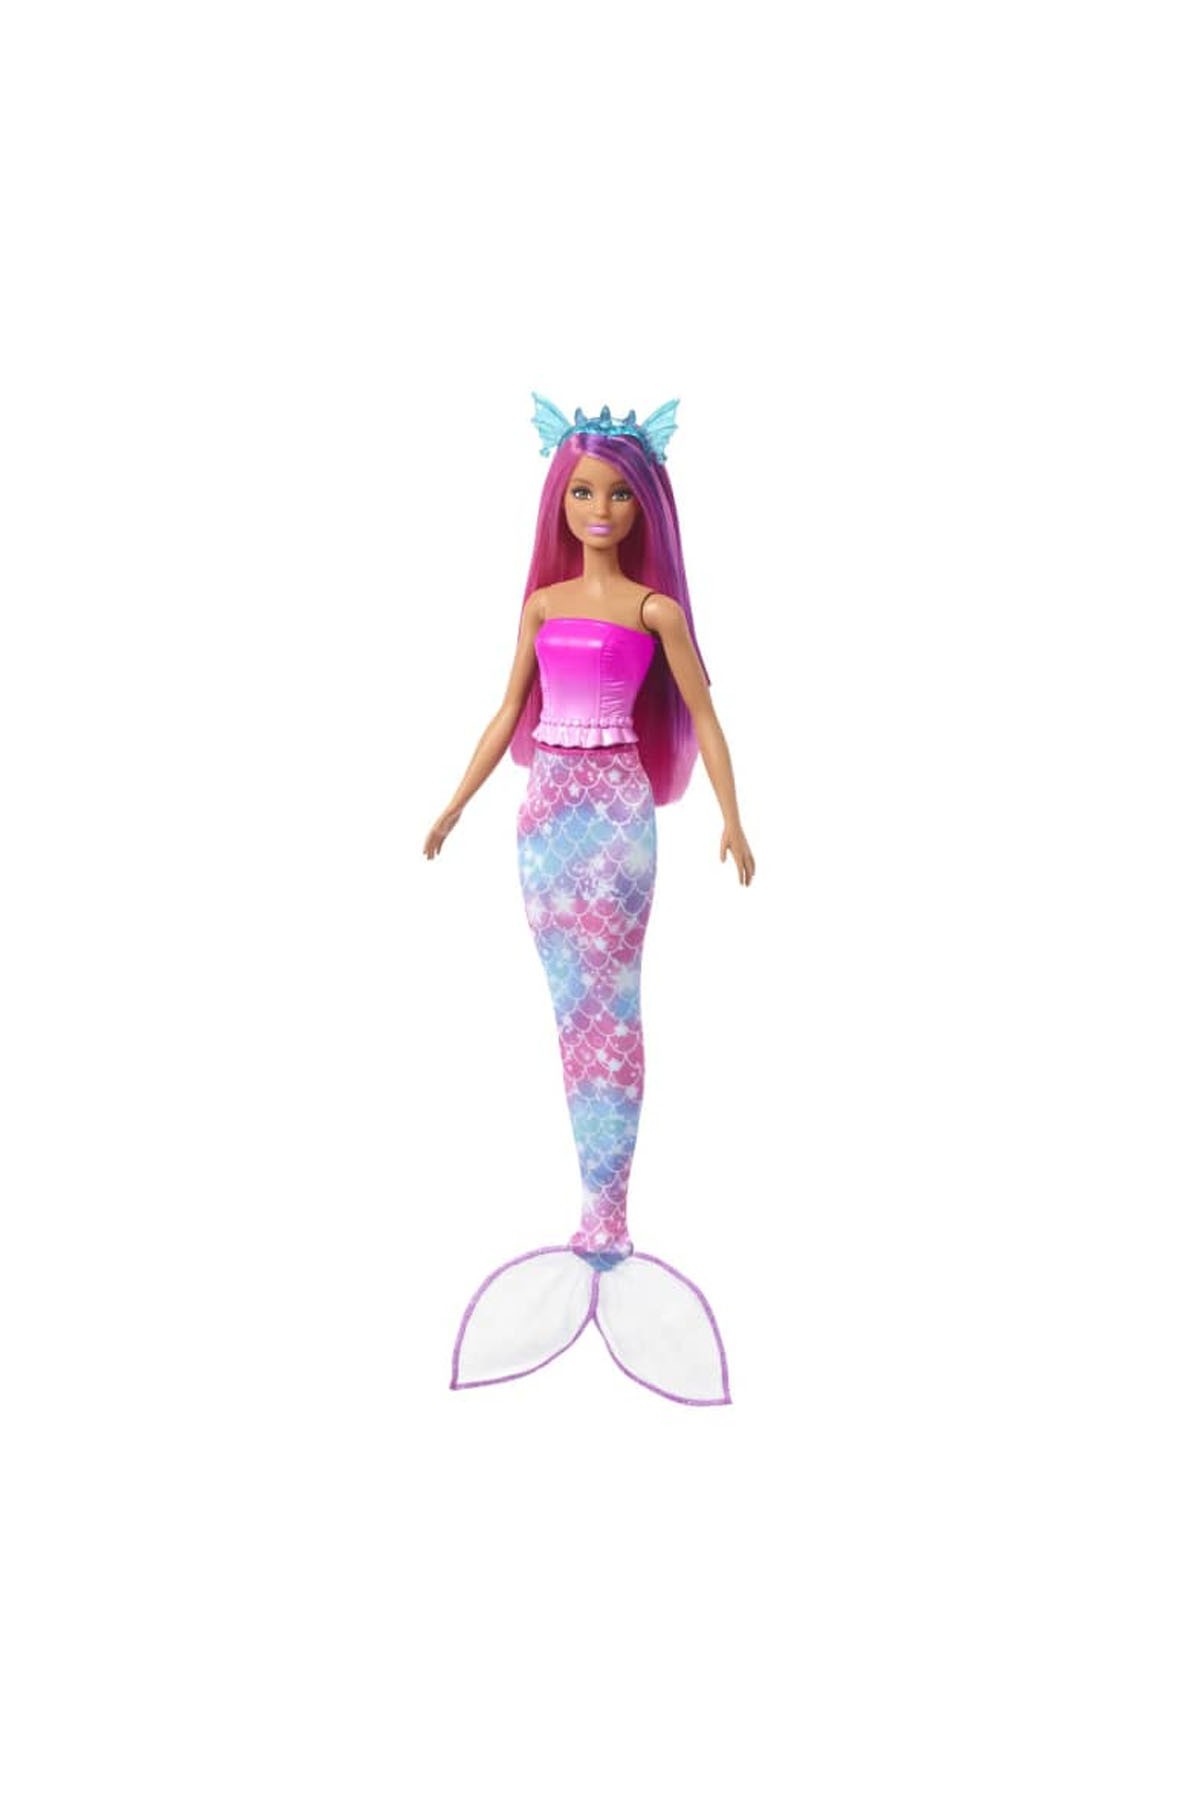 Barbie Dreamtopia Prenses Bebek ve Aksesuarları Oyun Setleri HLC28